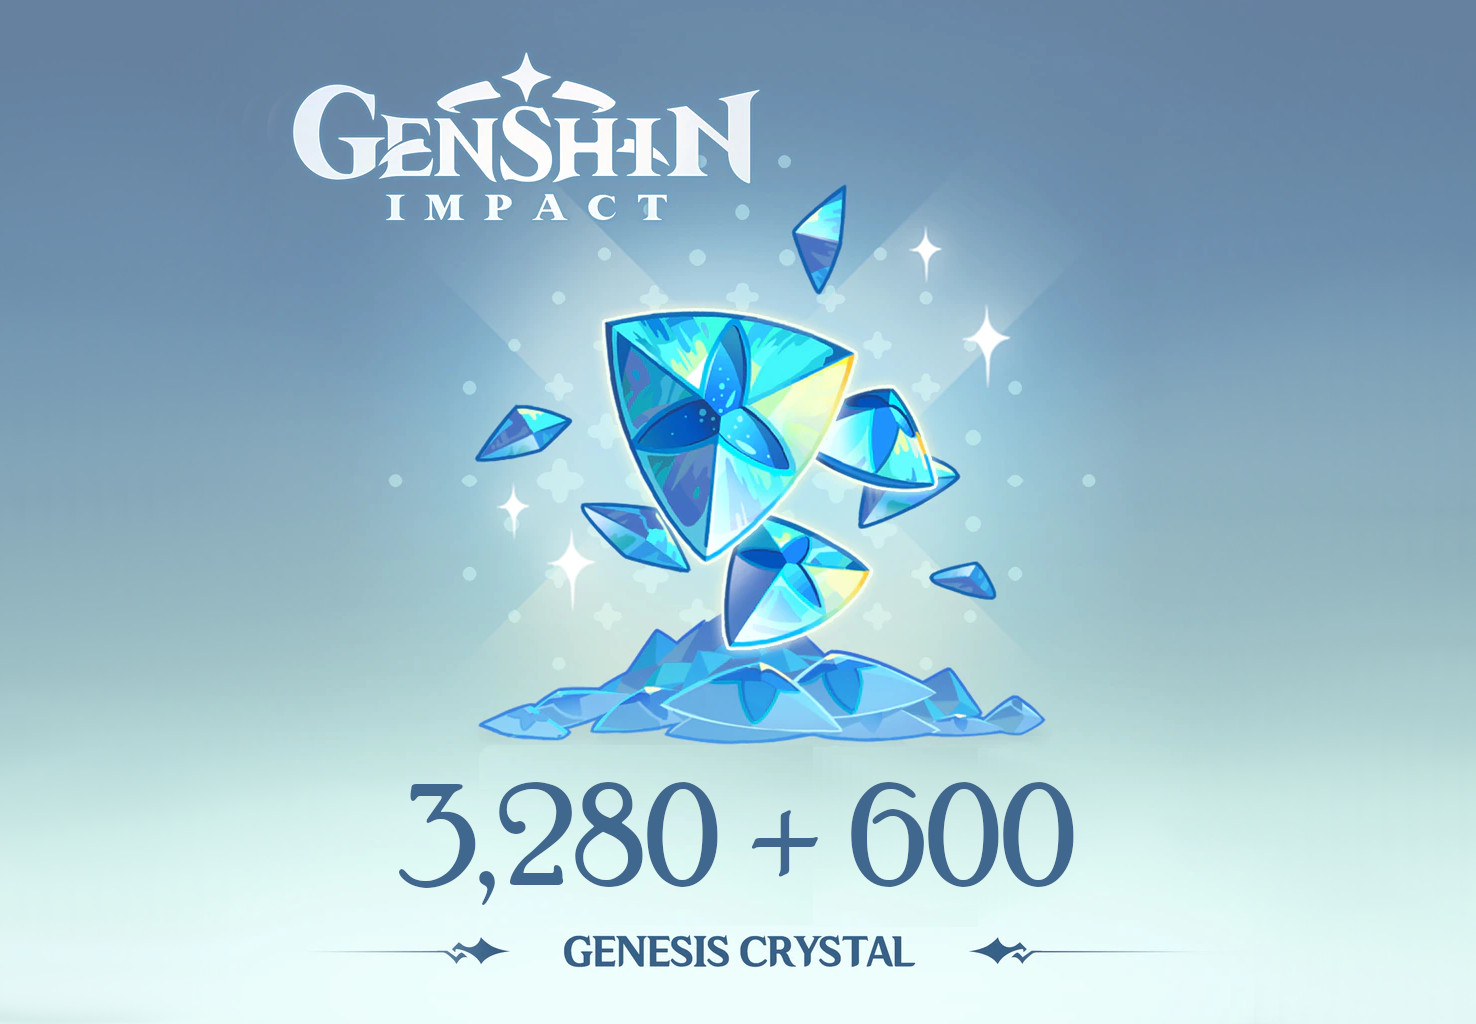 Genshin Impact - 3,280 + 600 Genesis Crystals Reidos Voucher [$ 53.39]